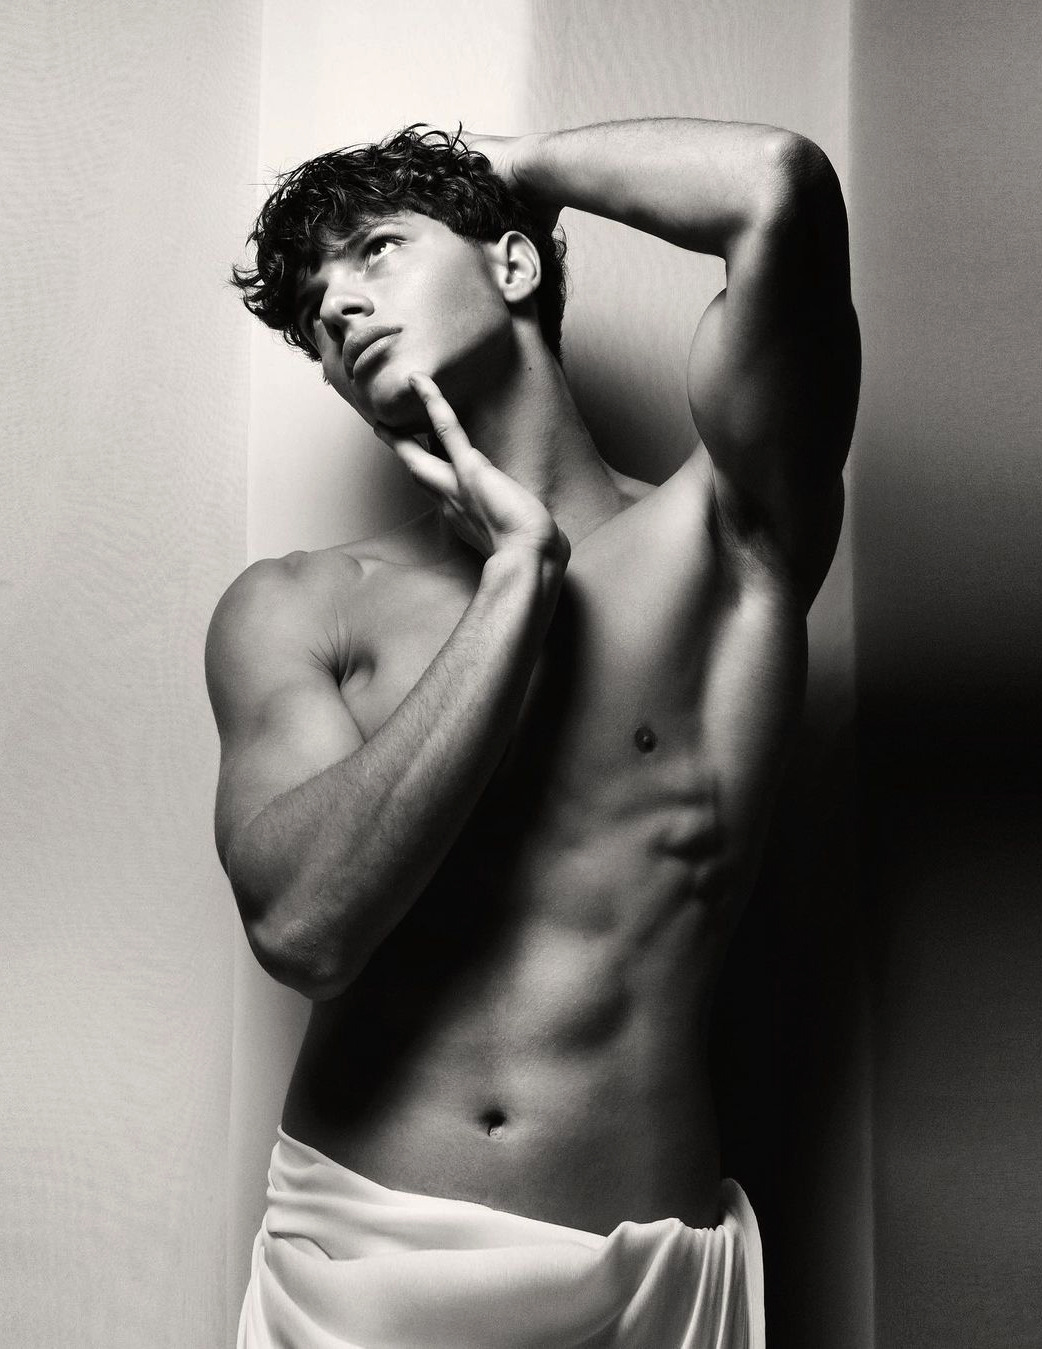 Nacho penín nude - 🧡 DarkNight @JeremyF on AdultNode: #guy #naked #model #Nacho...